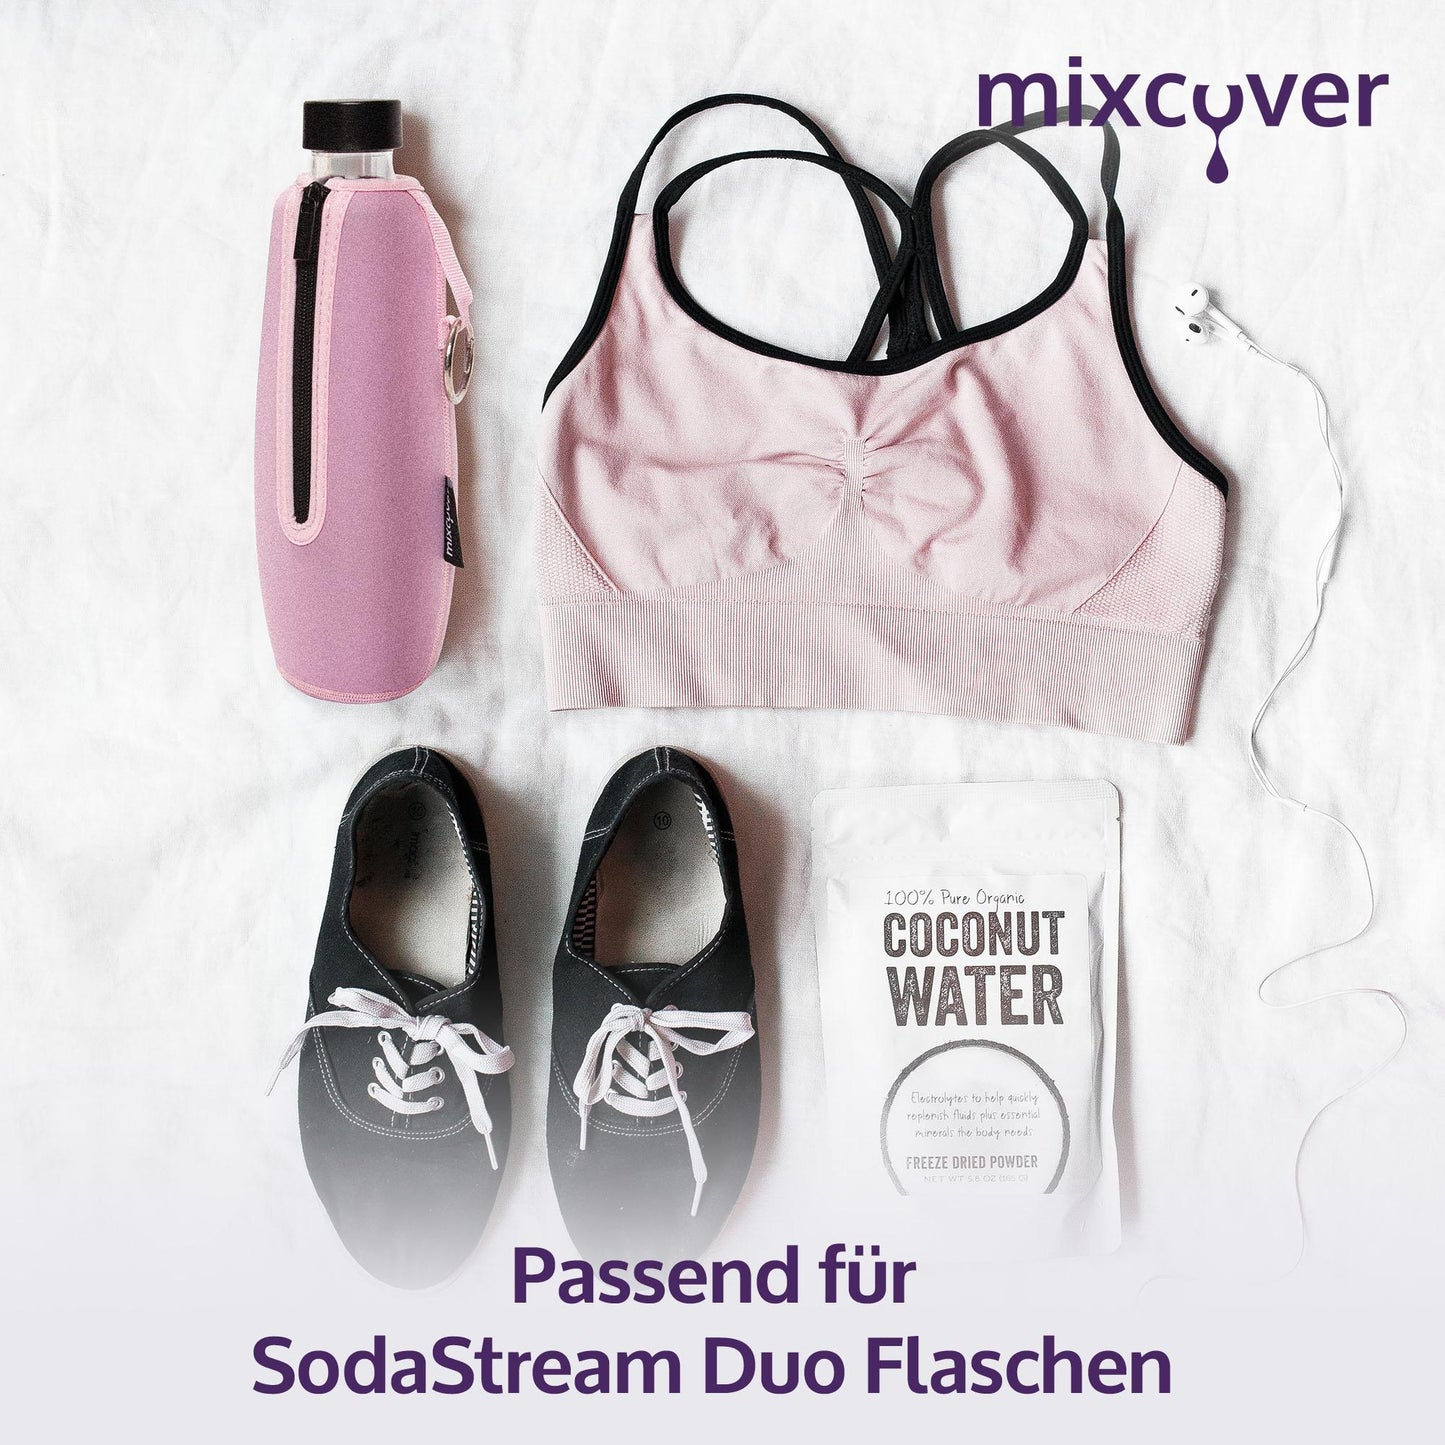 mixcover isolierter Flaschenschutz Sleeve kompatibel mit SodaStream Duo Glasflaschen Schutzhülle für Flaschen, Schutz vor Bruch und Kratzern, Farbe Schwarz